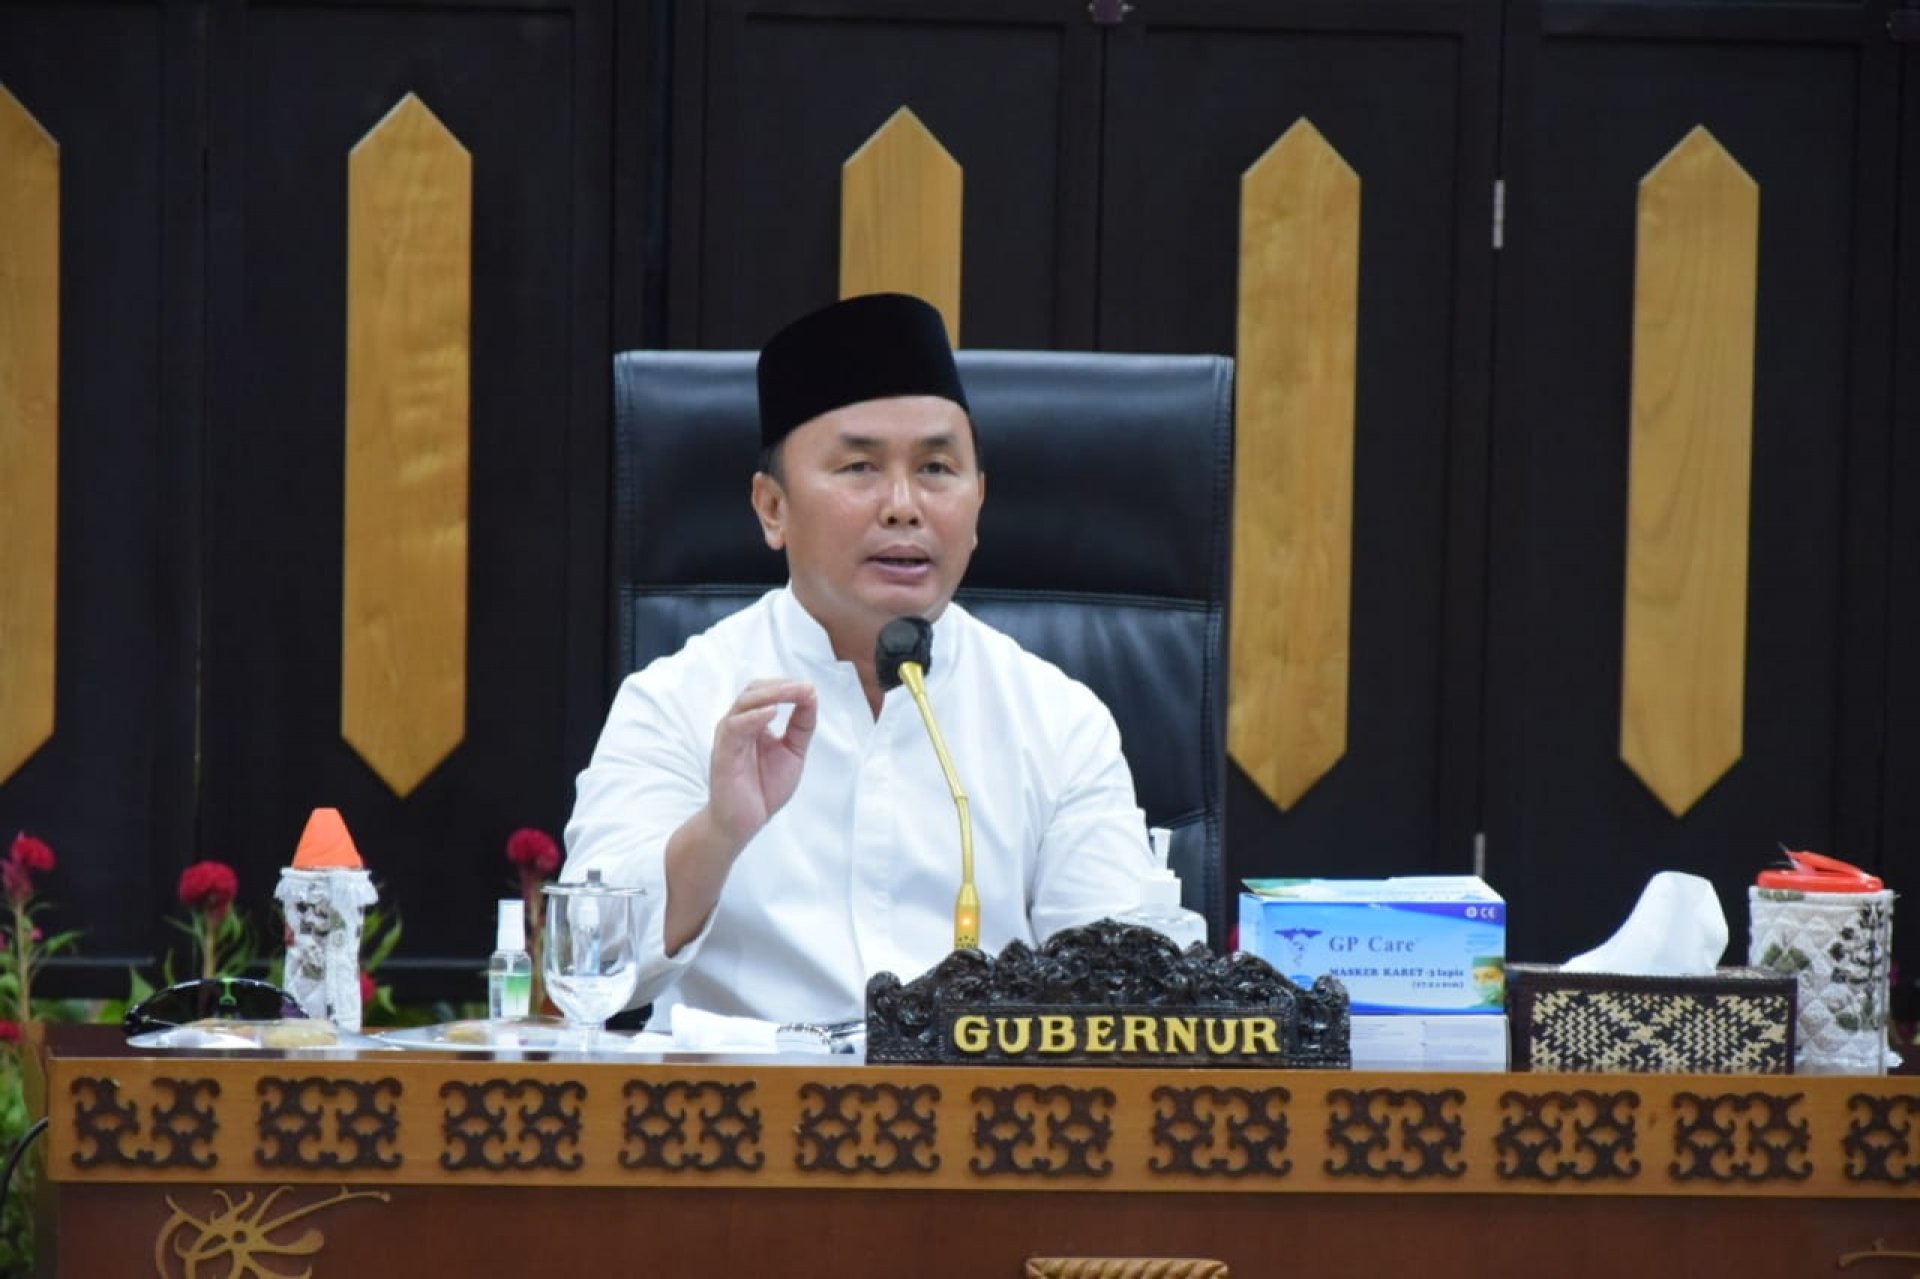 Gubernur Sugianto Sabran: Kedepannya Tidak Ada Lagi Desa Yang Tertinggal